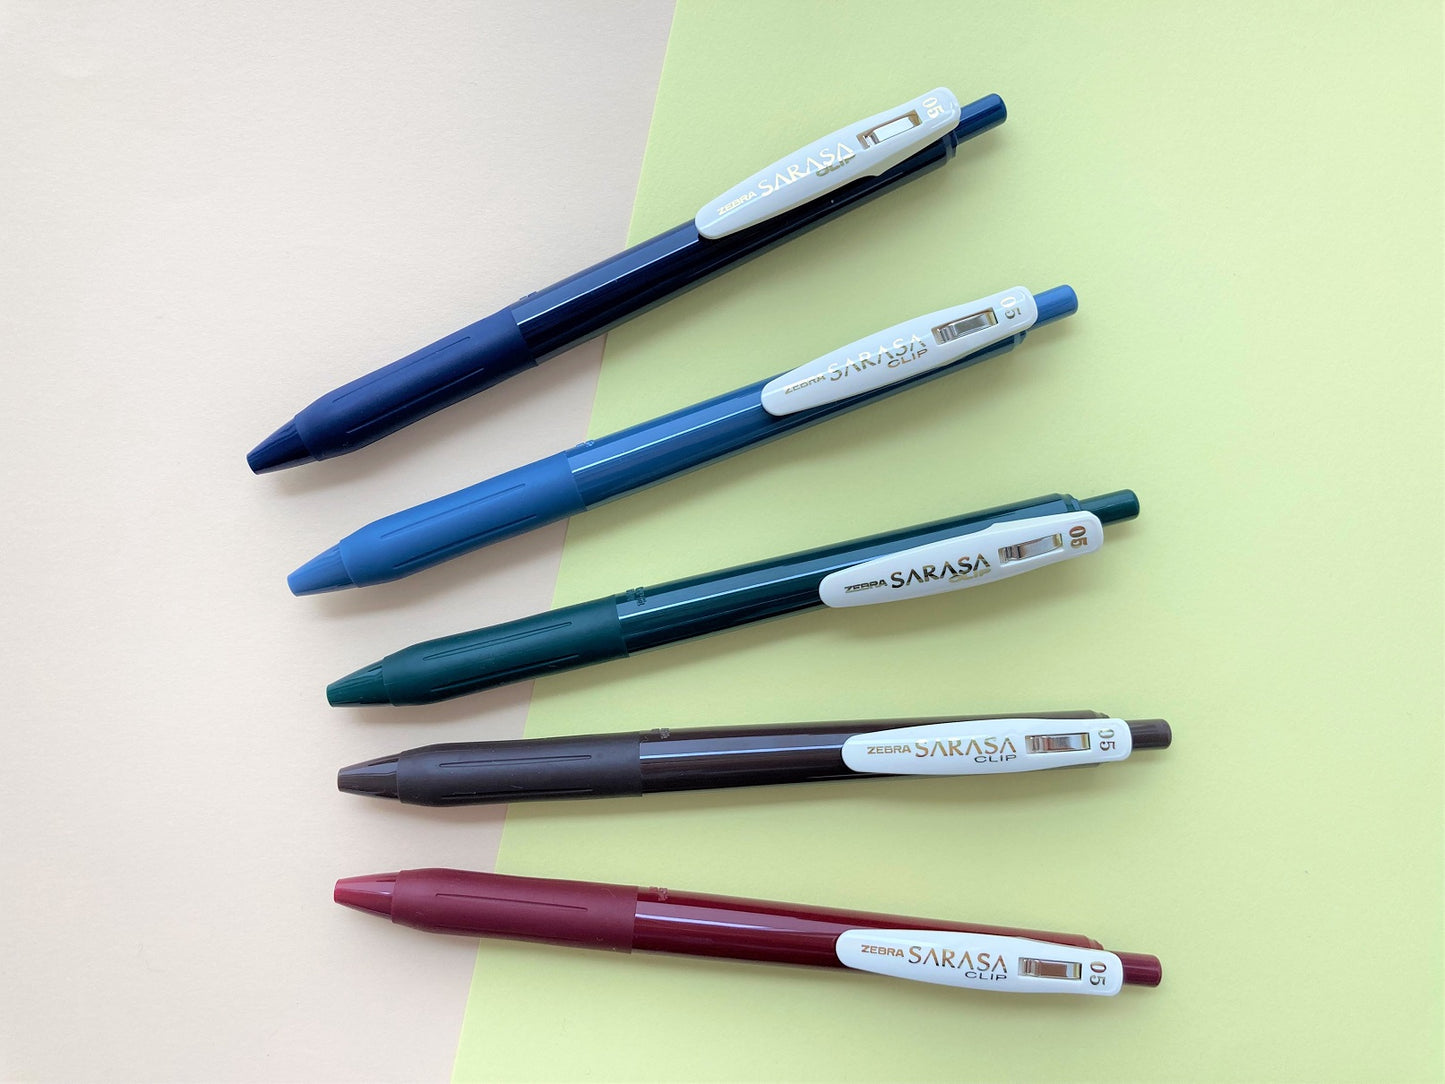 Zebra Sarasa Clip Pen Vintage color  5 set